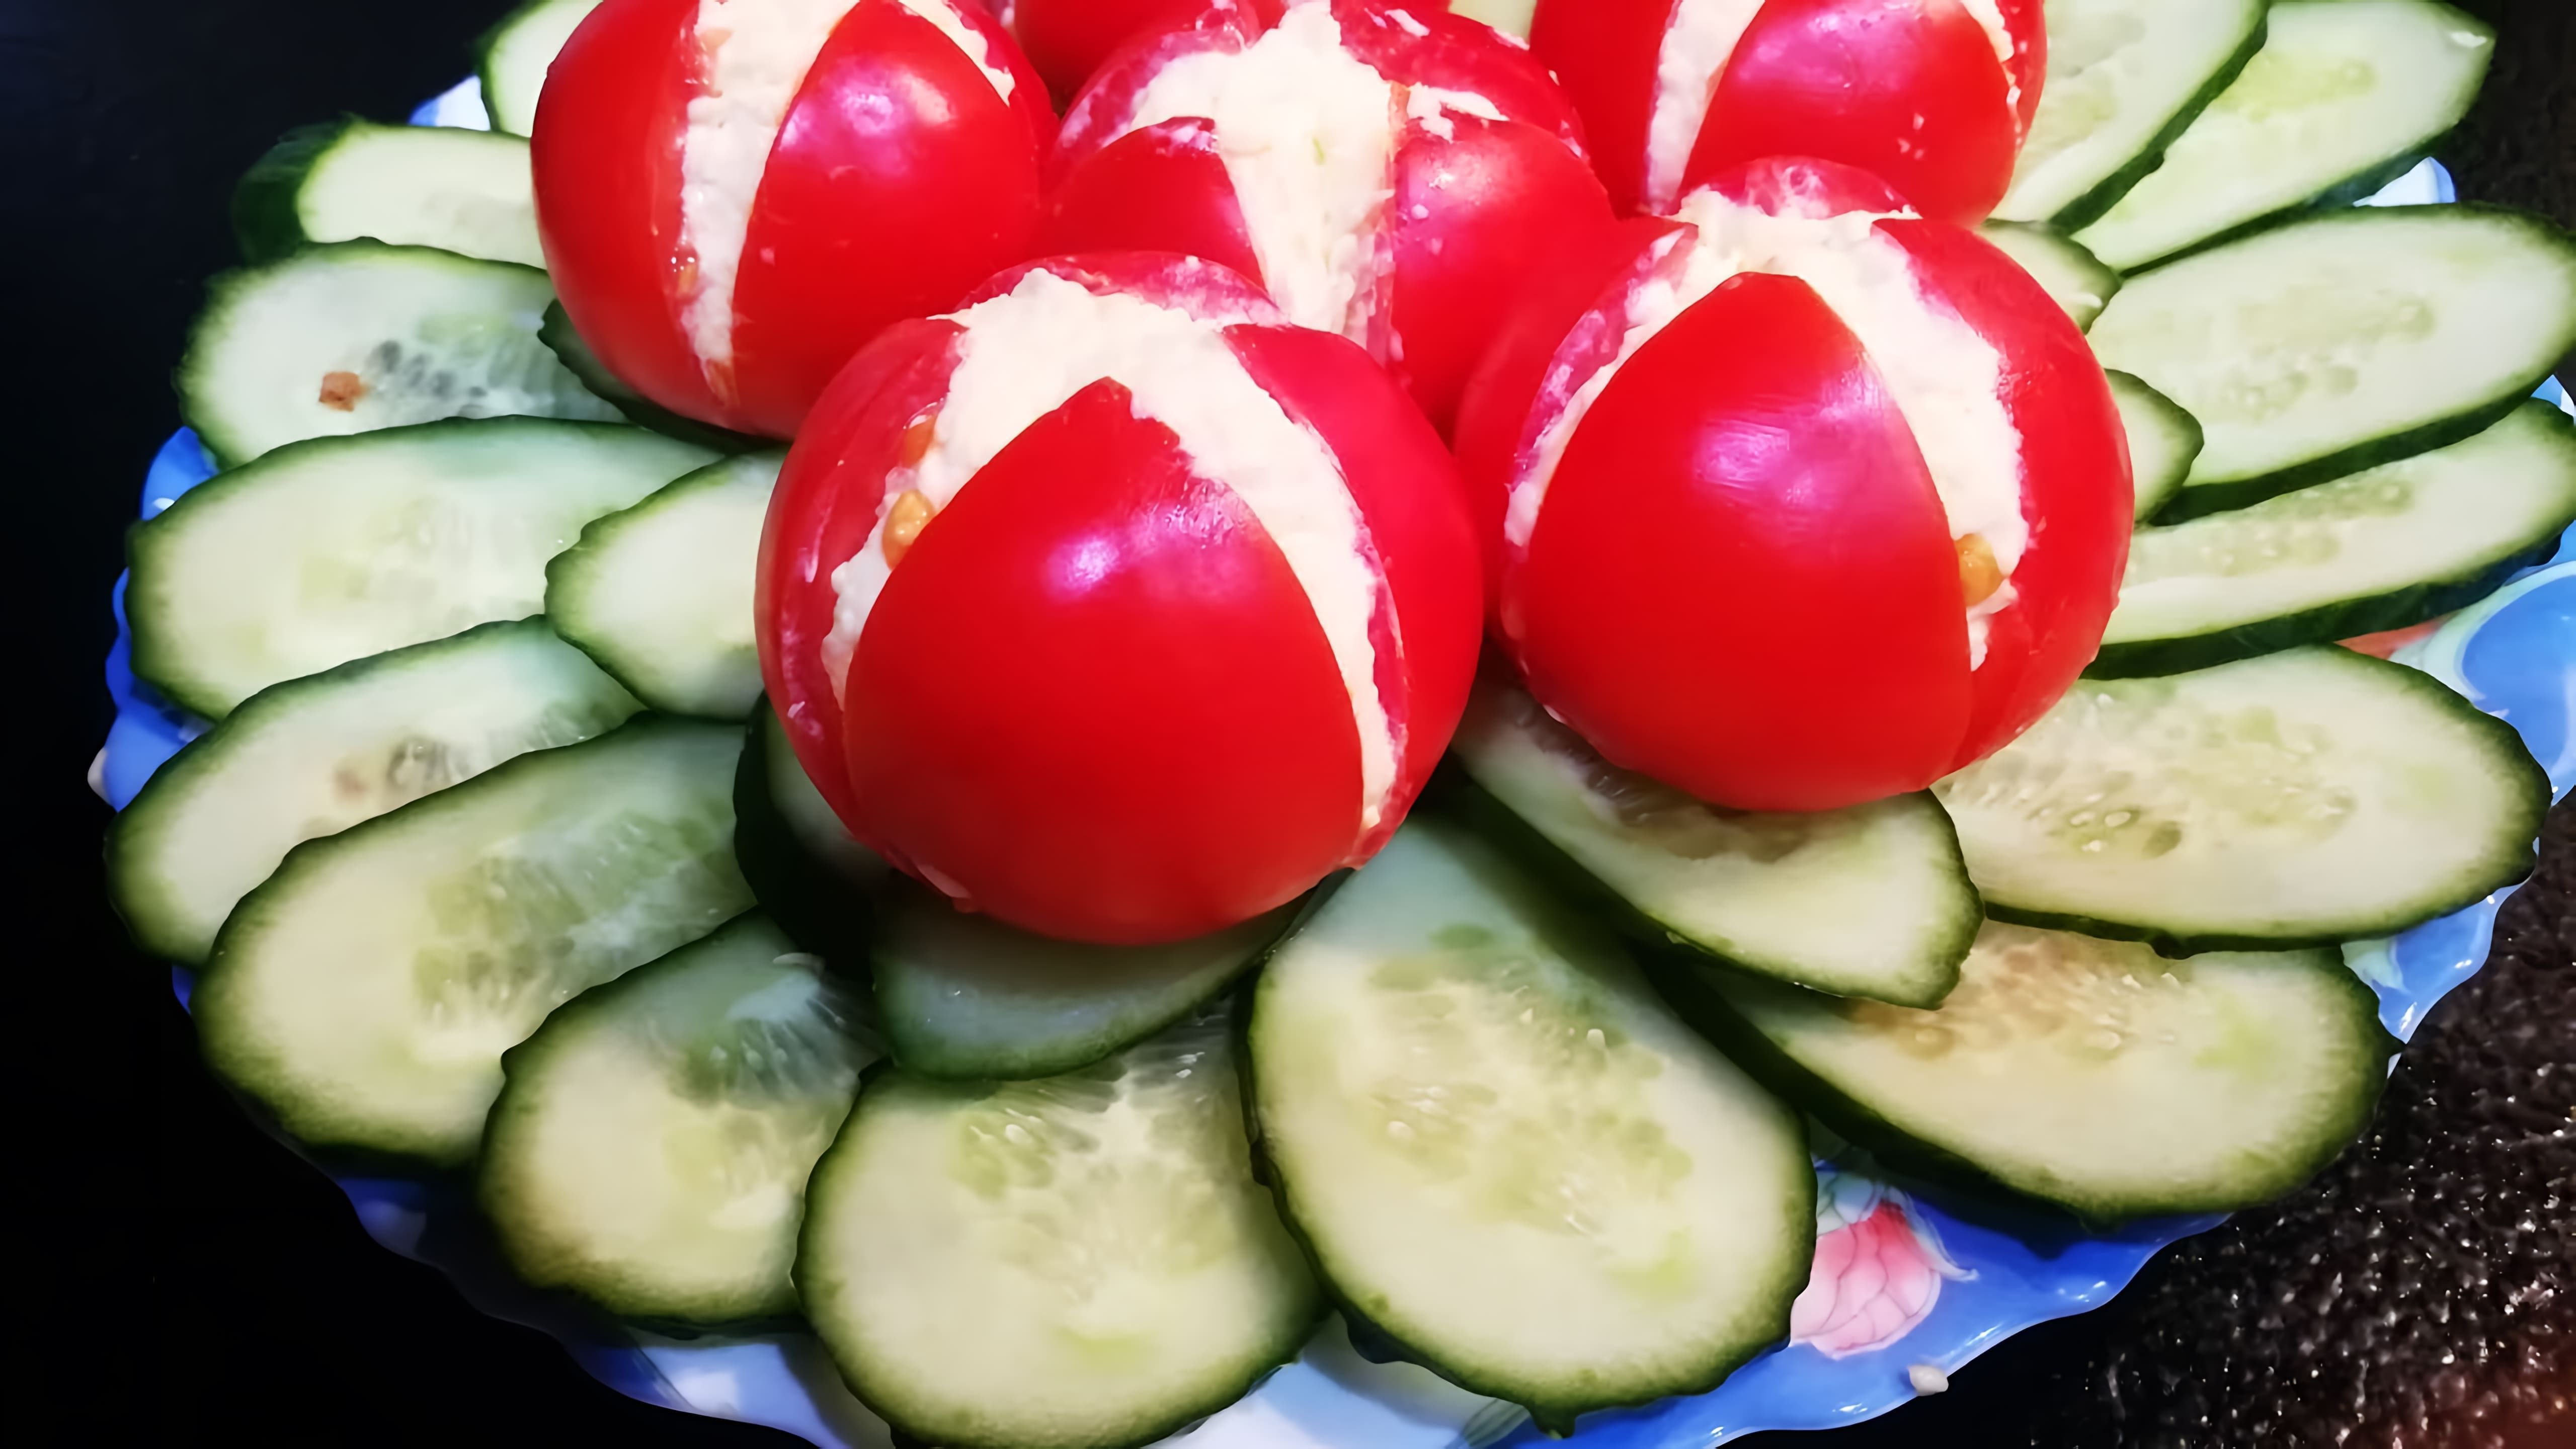 В этом видео демонстрируется рецепт закуски из помидоров и тюльпанов, который можно приготовить к празднику 8 марта